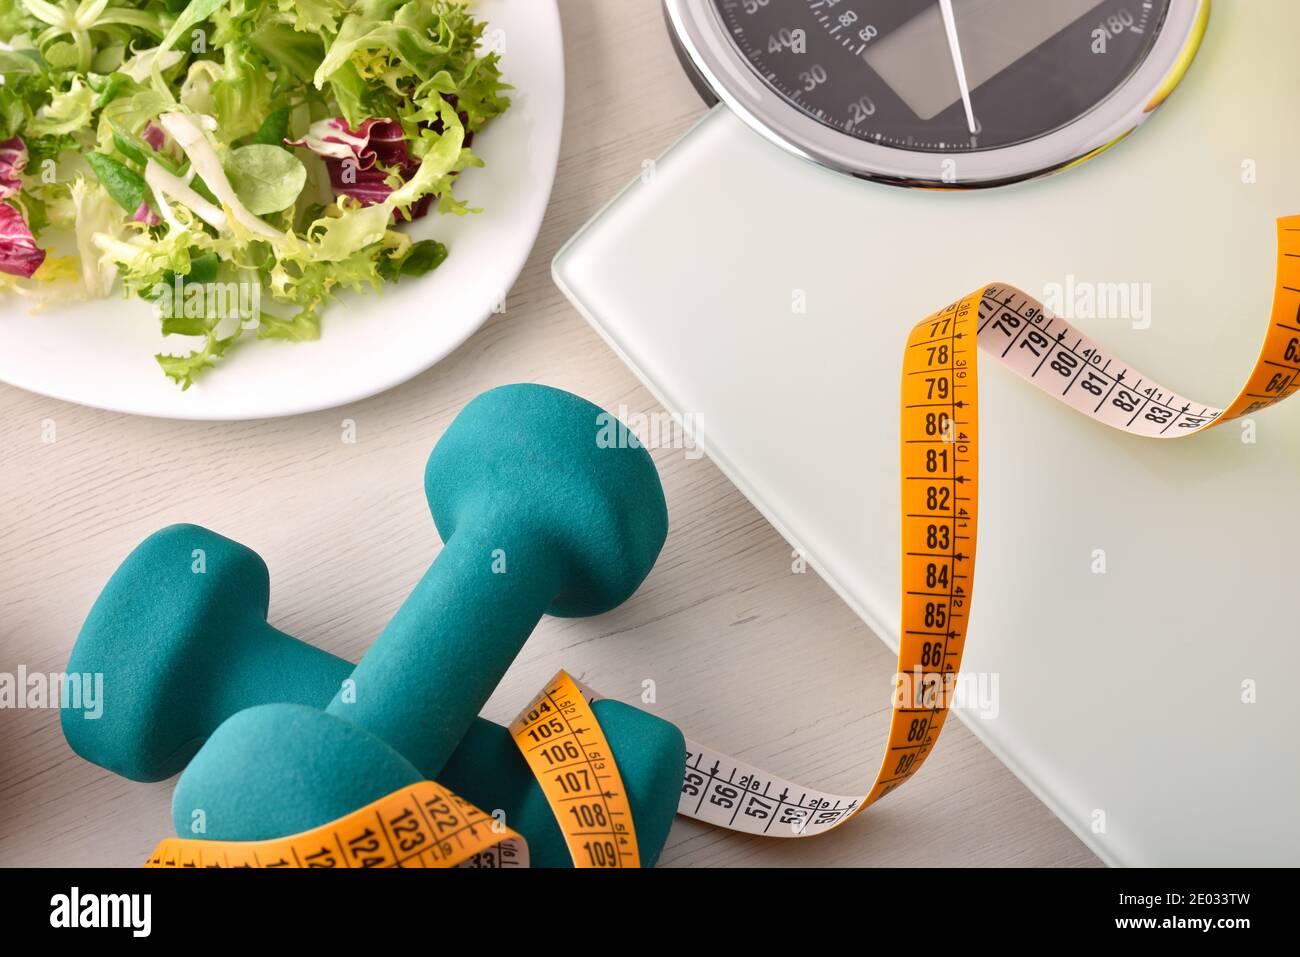 Gesunde Lebensweise Hintergrund mit Hantel-Salat und Gewichtskontrolle oben. Draufsicht. Horizontale Zusammensetzung. Stockfoto